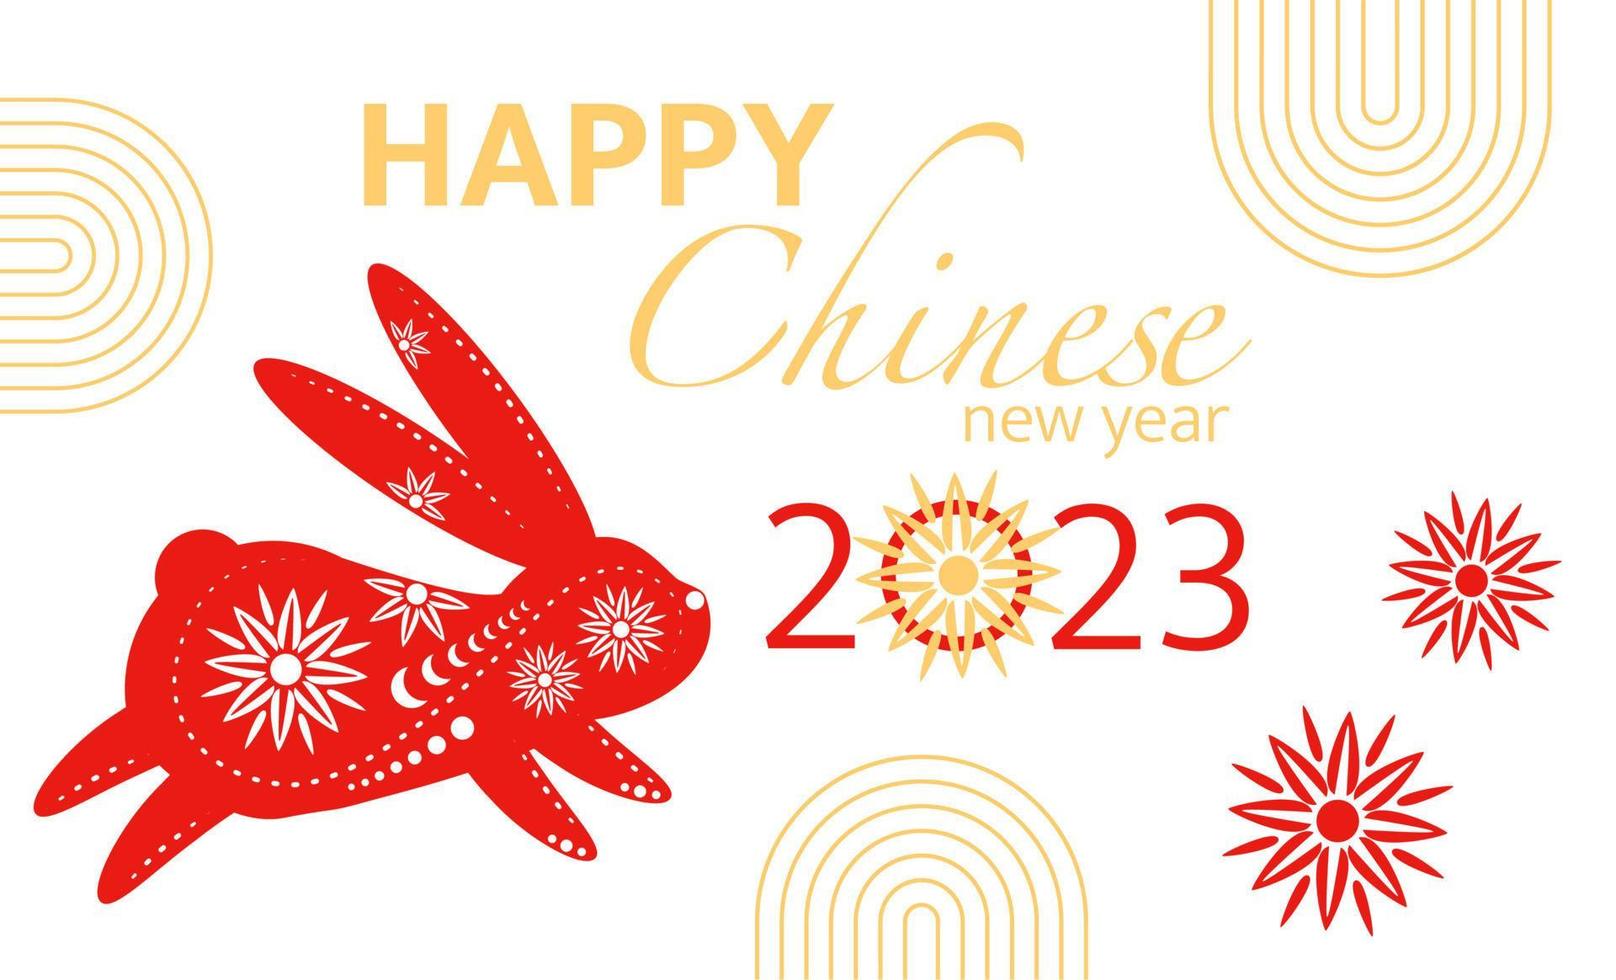 Cinese nuovo anno saluto carta con decorativo coniglio, 2023 nuovo anno invito, carta, saluto, cartolina, regalo, vettore illustrazione.